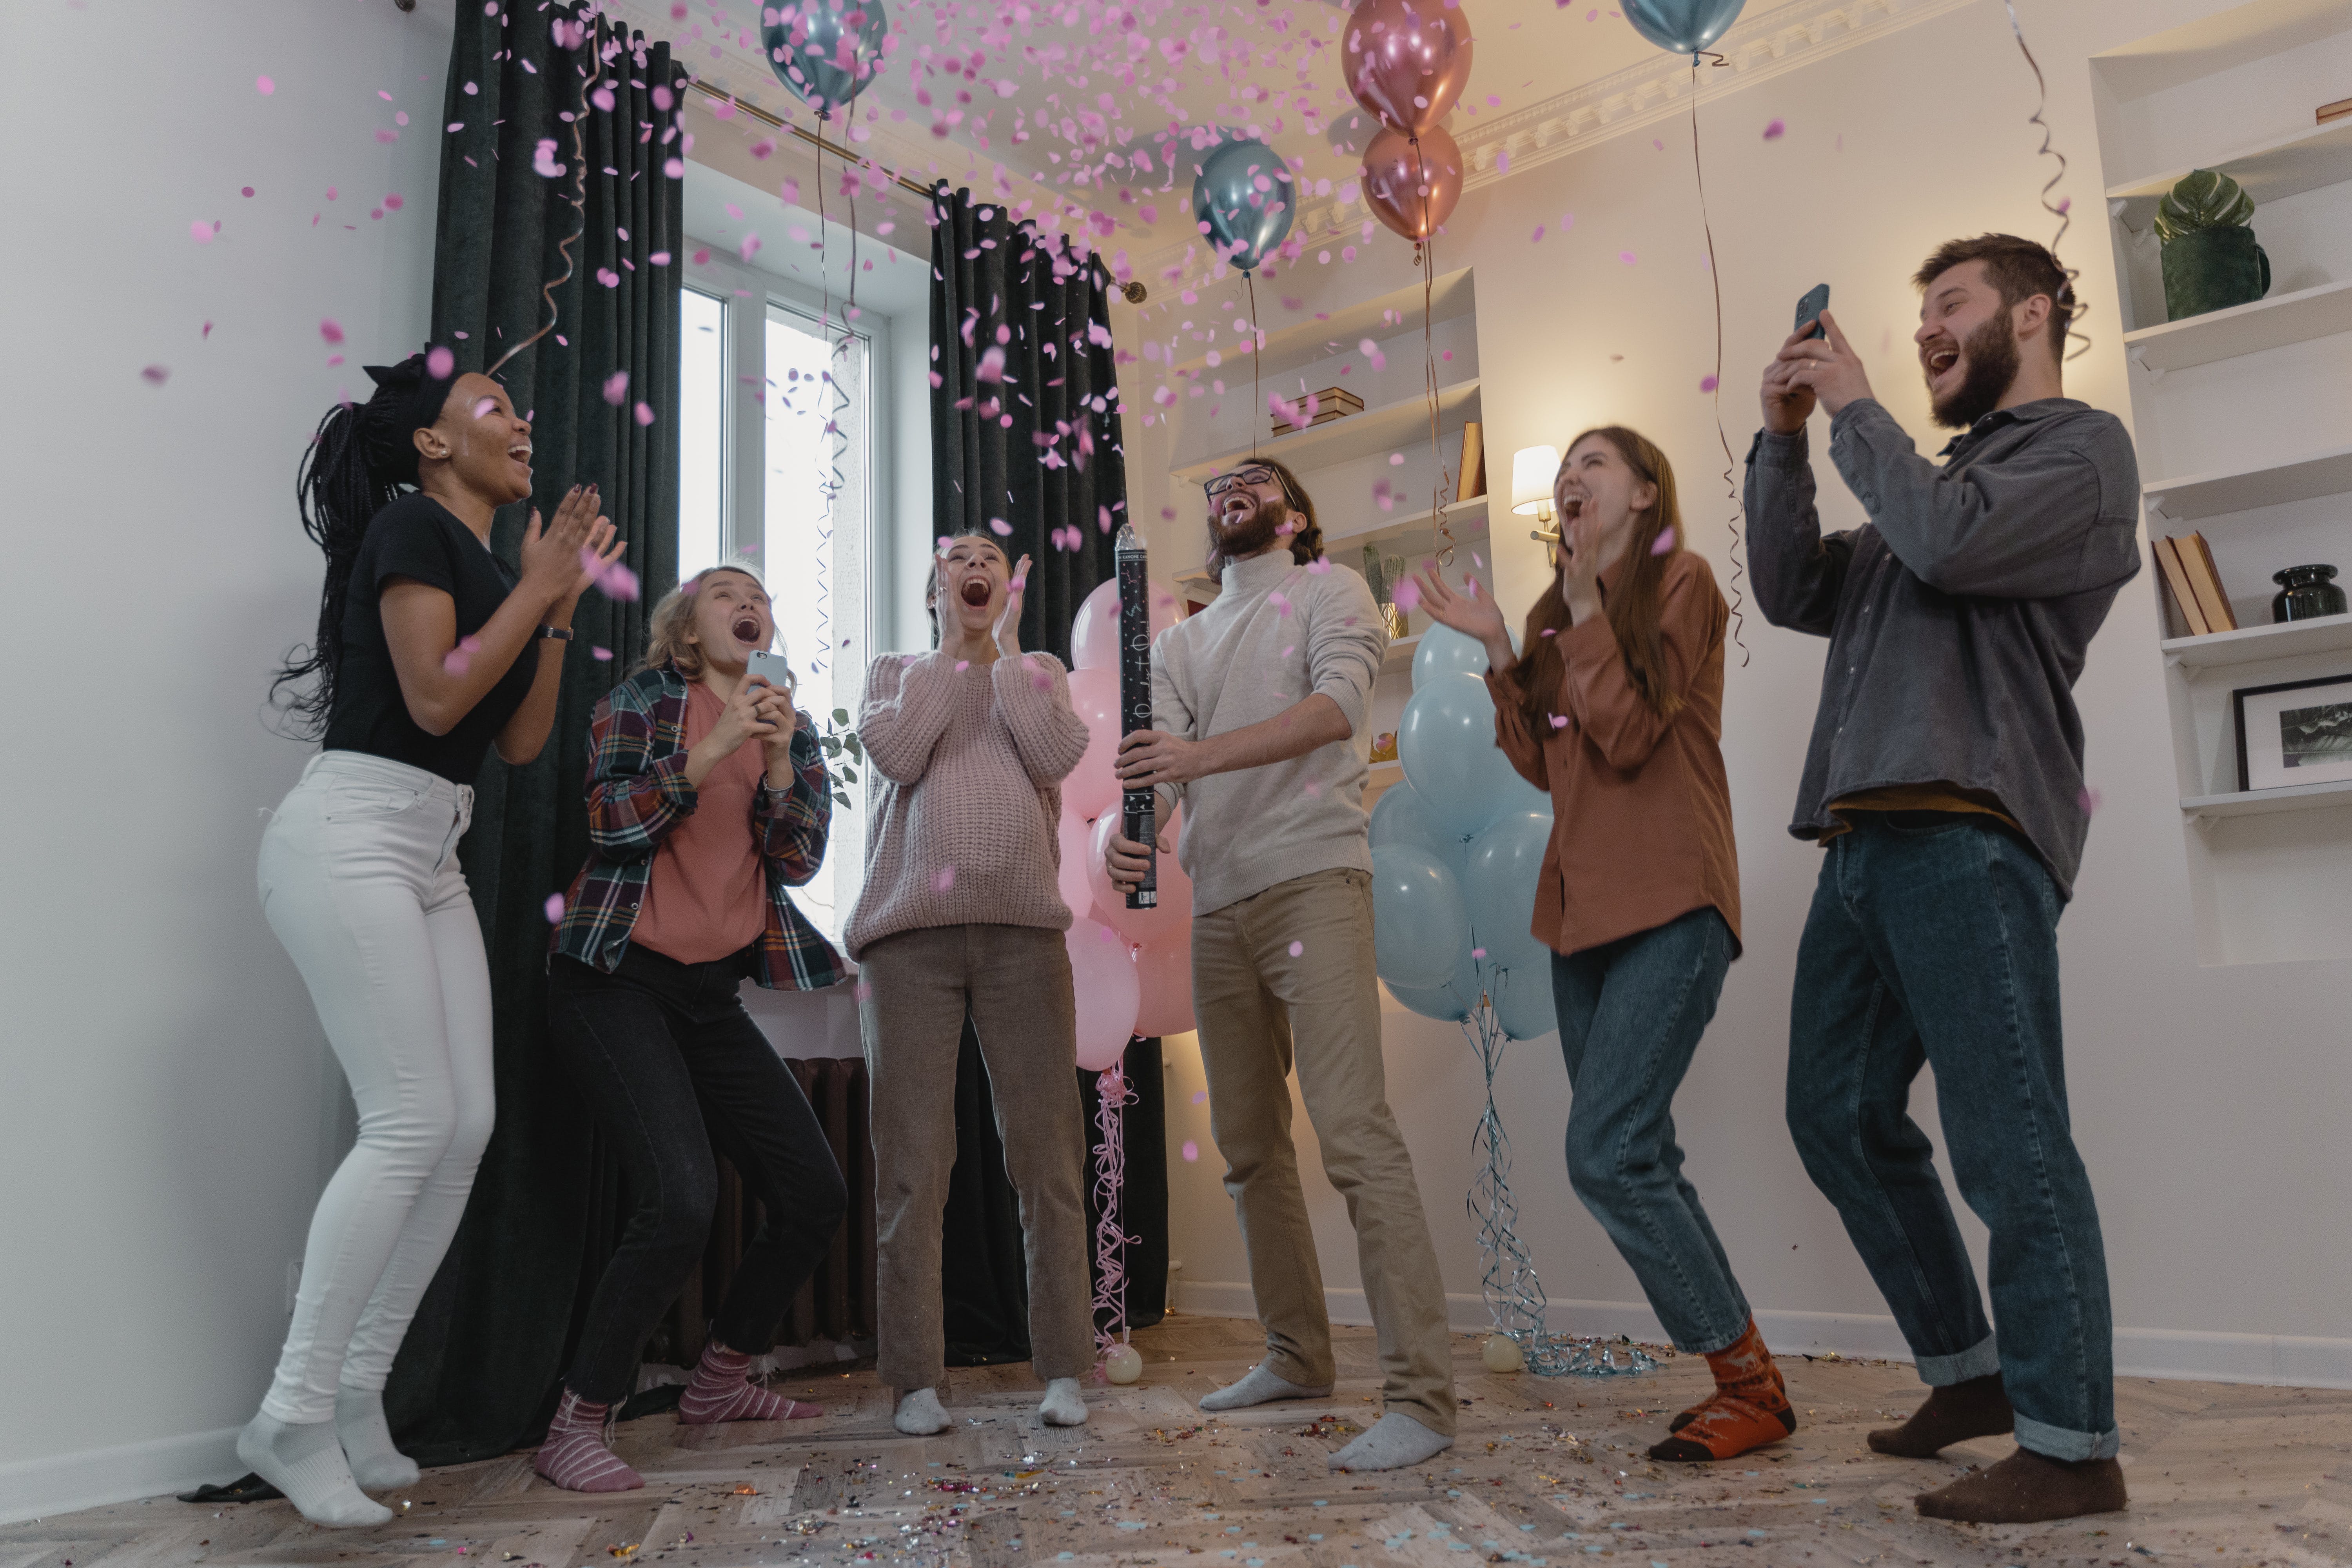 Un grupo de personas celebrando una fiesta de revelación de género | Foto: Pexels